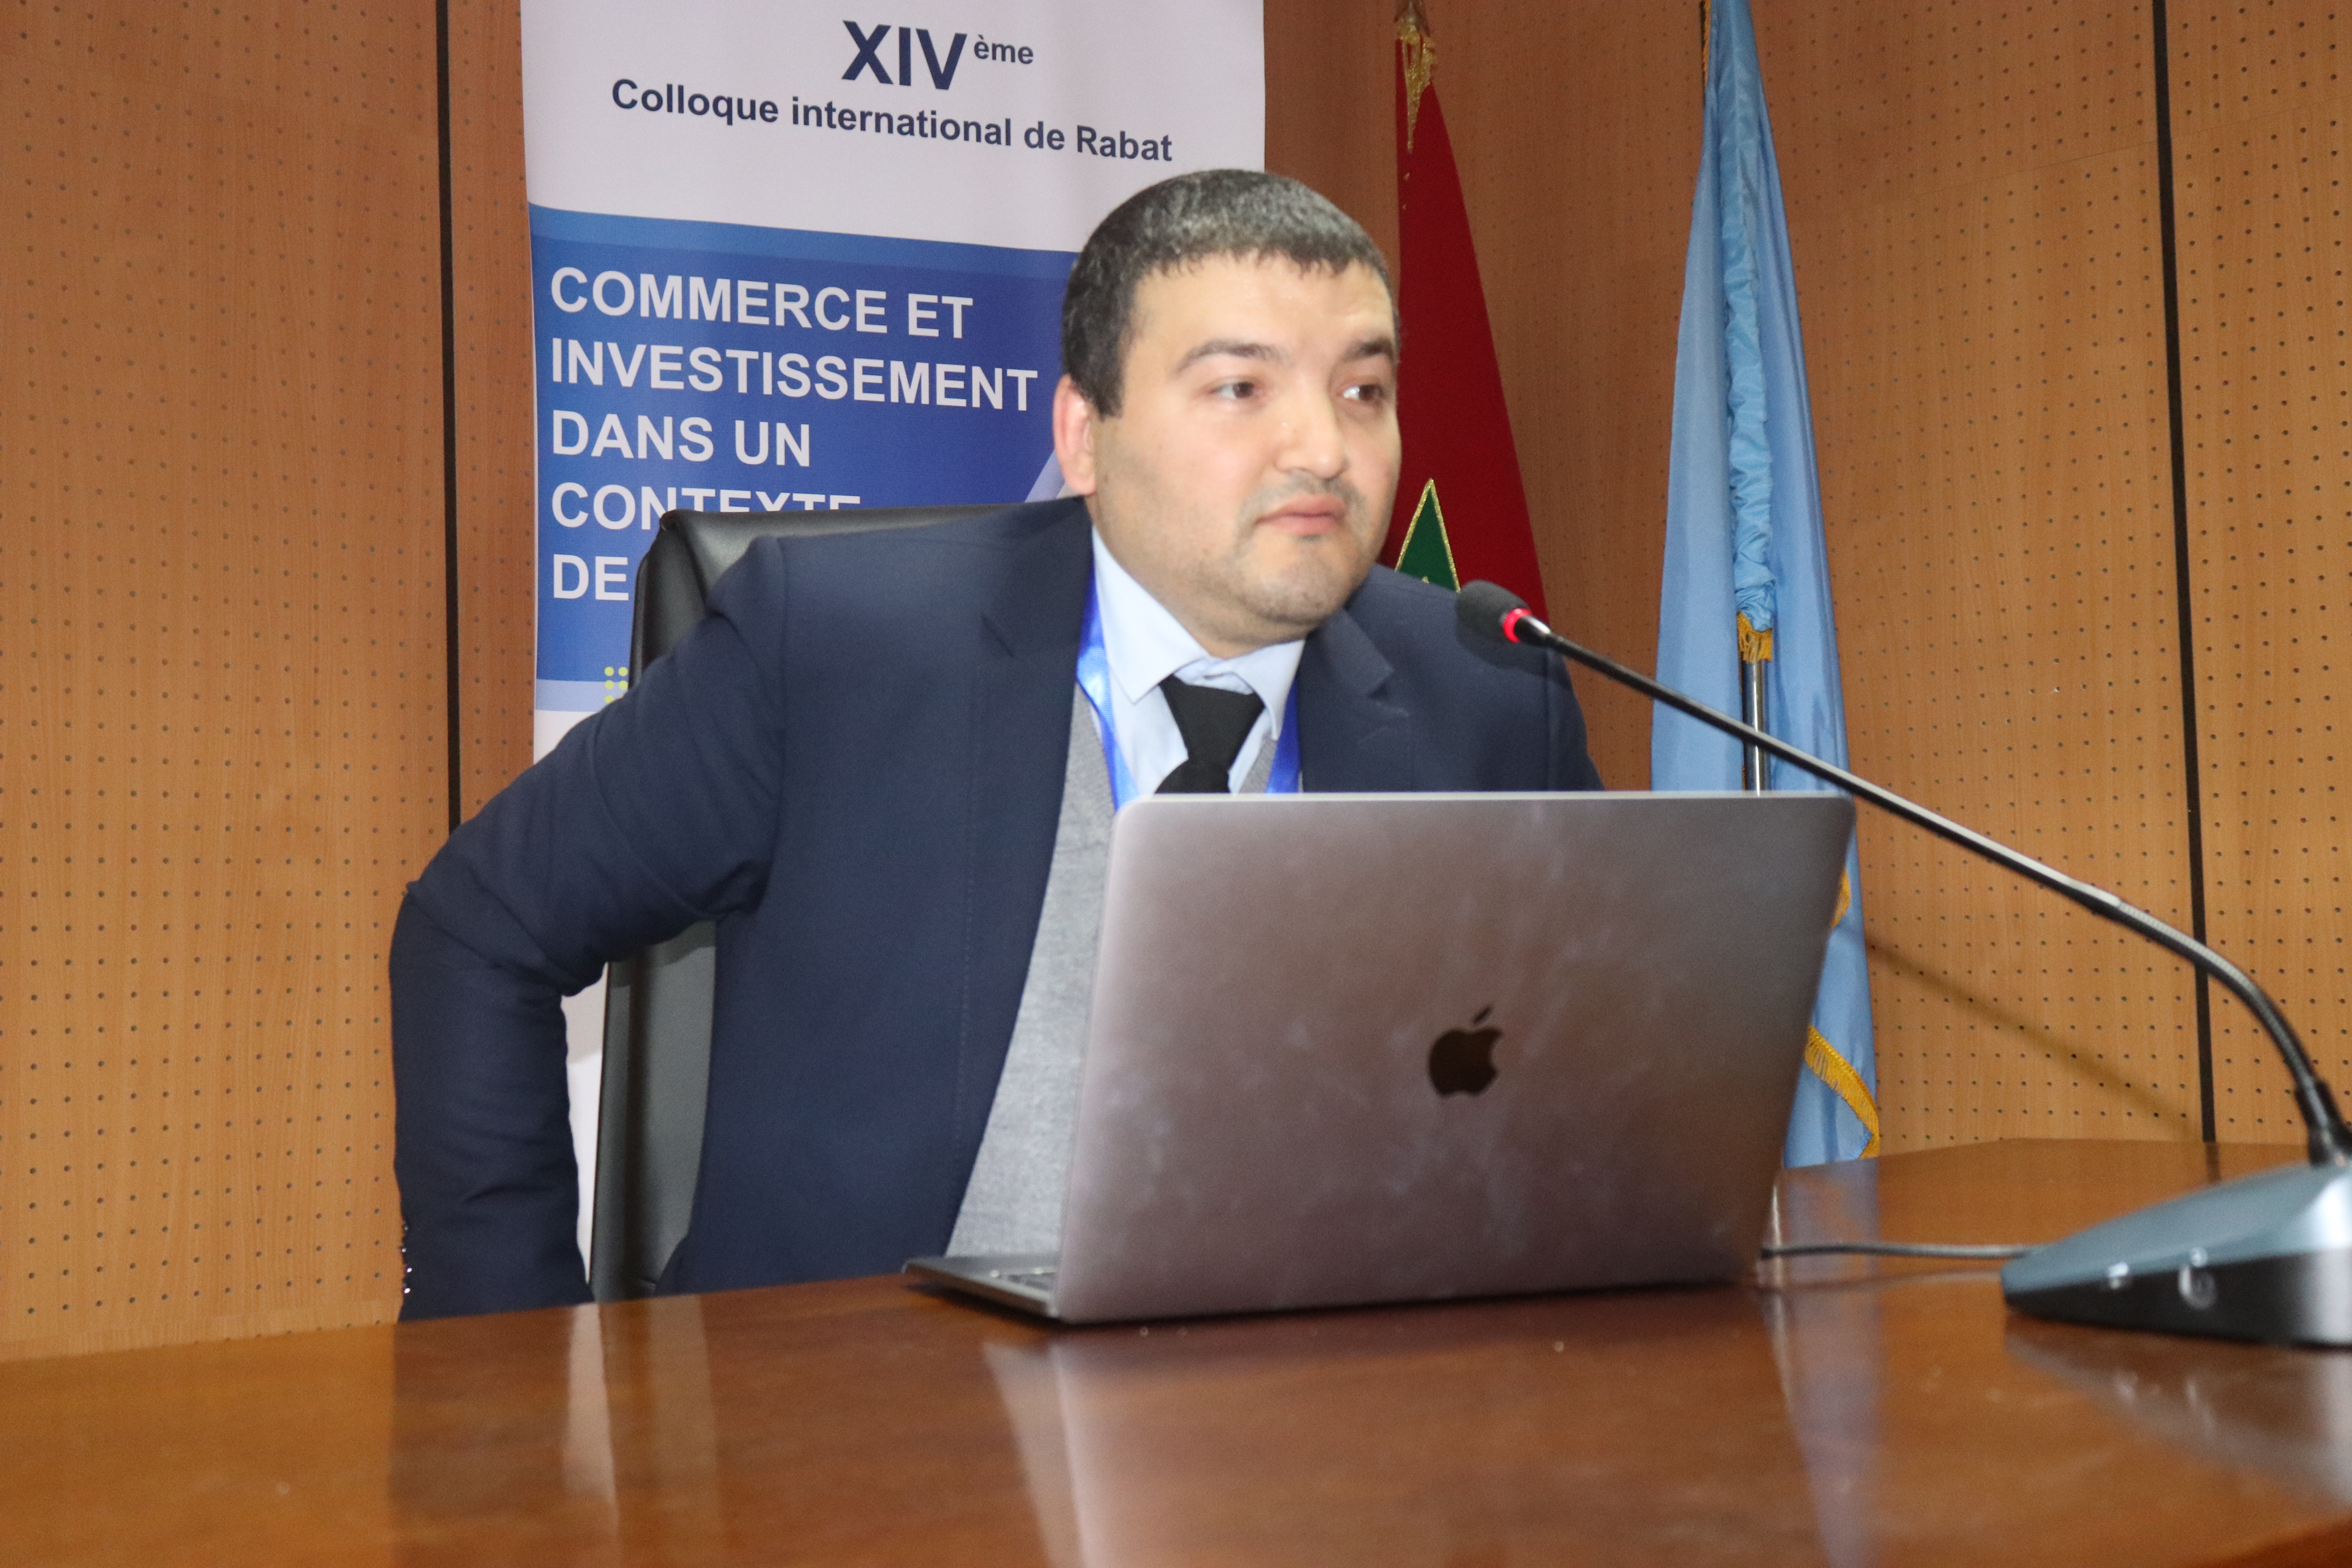 14 éme Colloque International du Rabat - Commerce et Investissement dans un contexte de crises